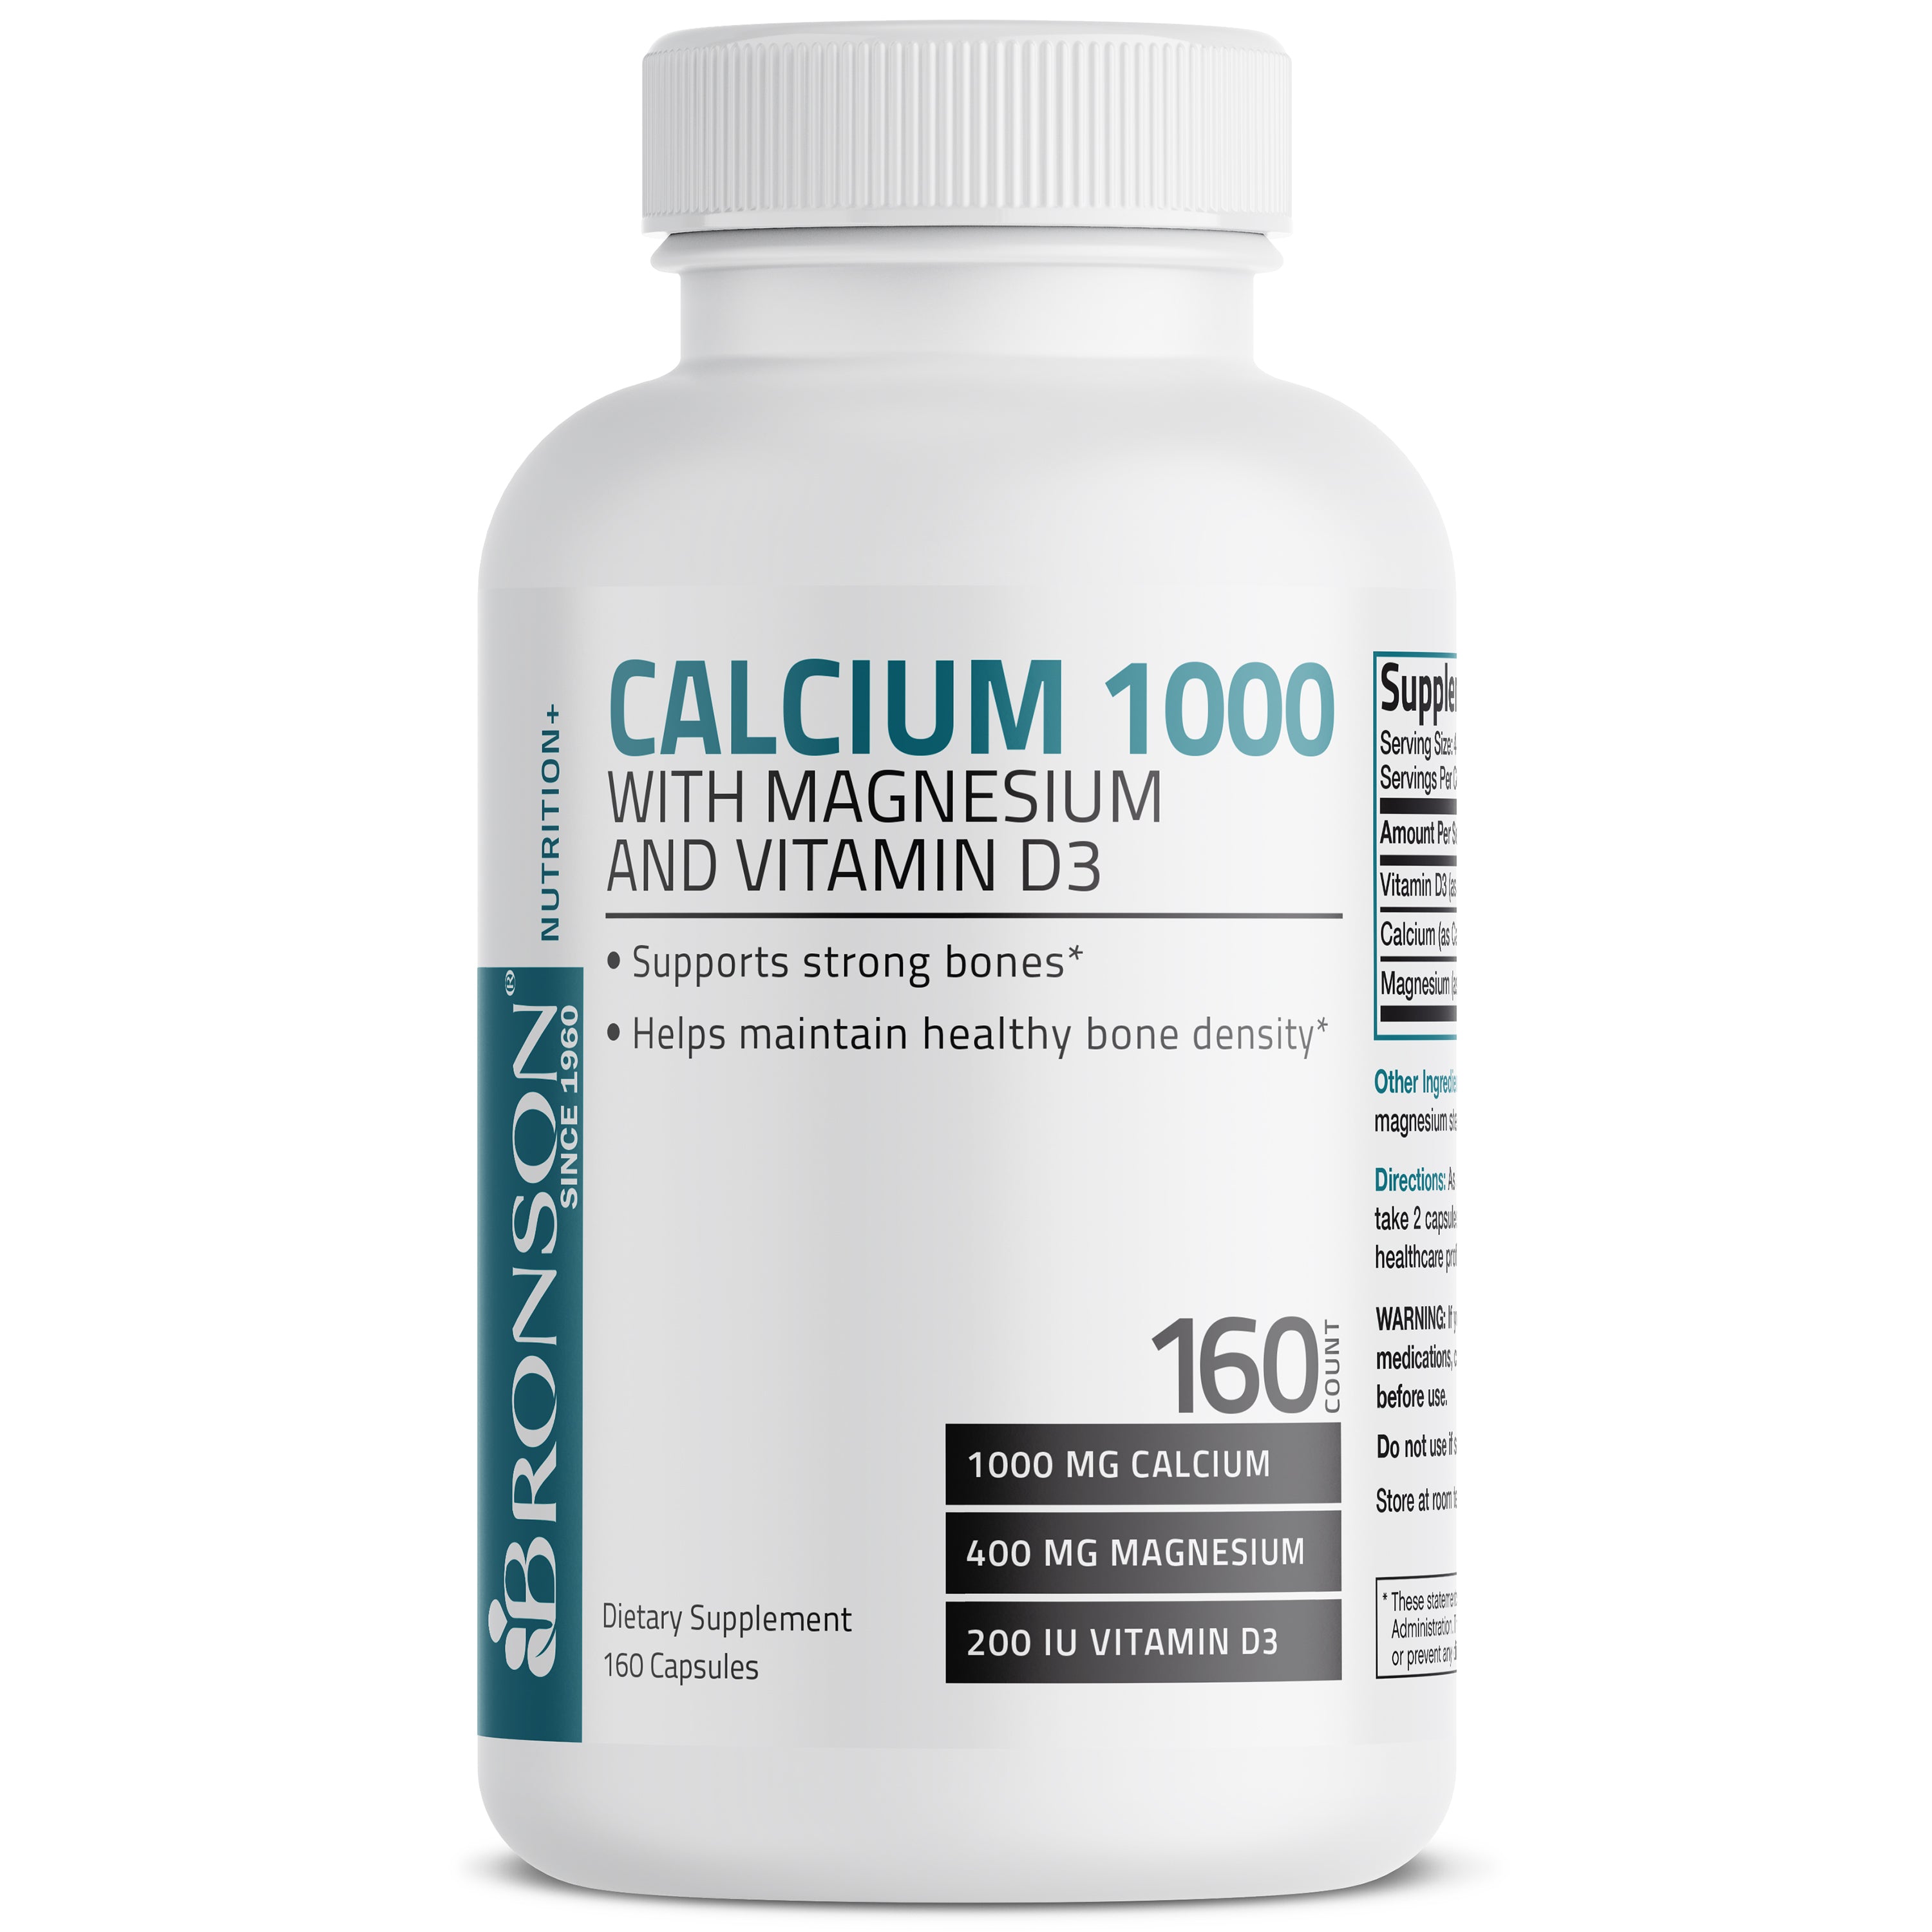 Calcium 1,000 Complex with Magnesium and Vitamin D - 160 Capsules view 1 of 4